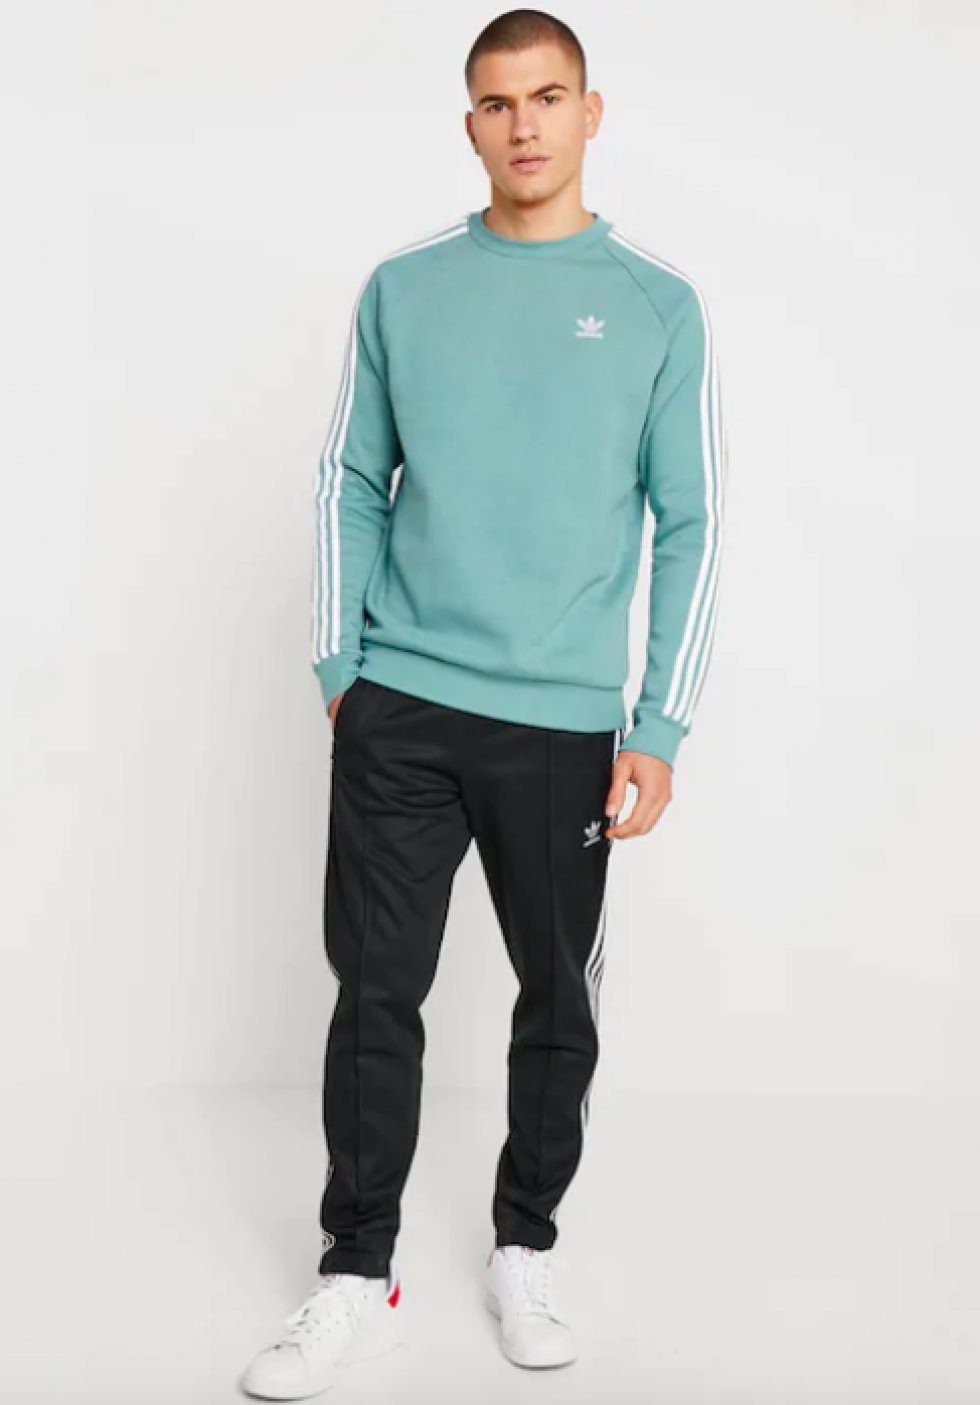 Adidas - 20 farverige trøjer, der gør dig klar til foråret 